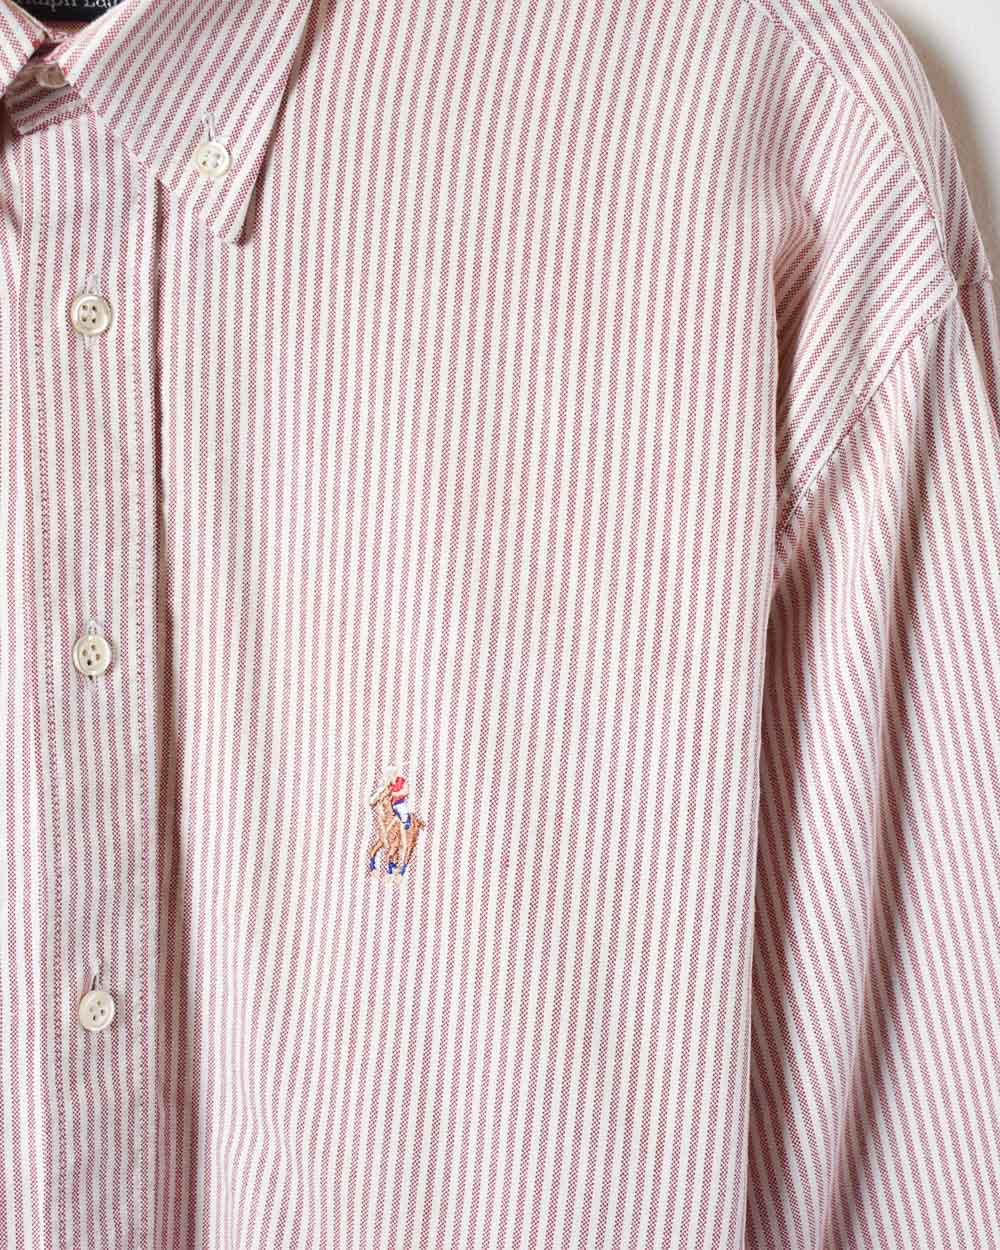 Red Polo Ralph Lauren Striped Shirt - Medium